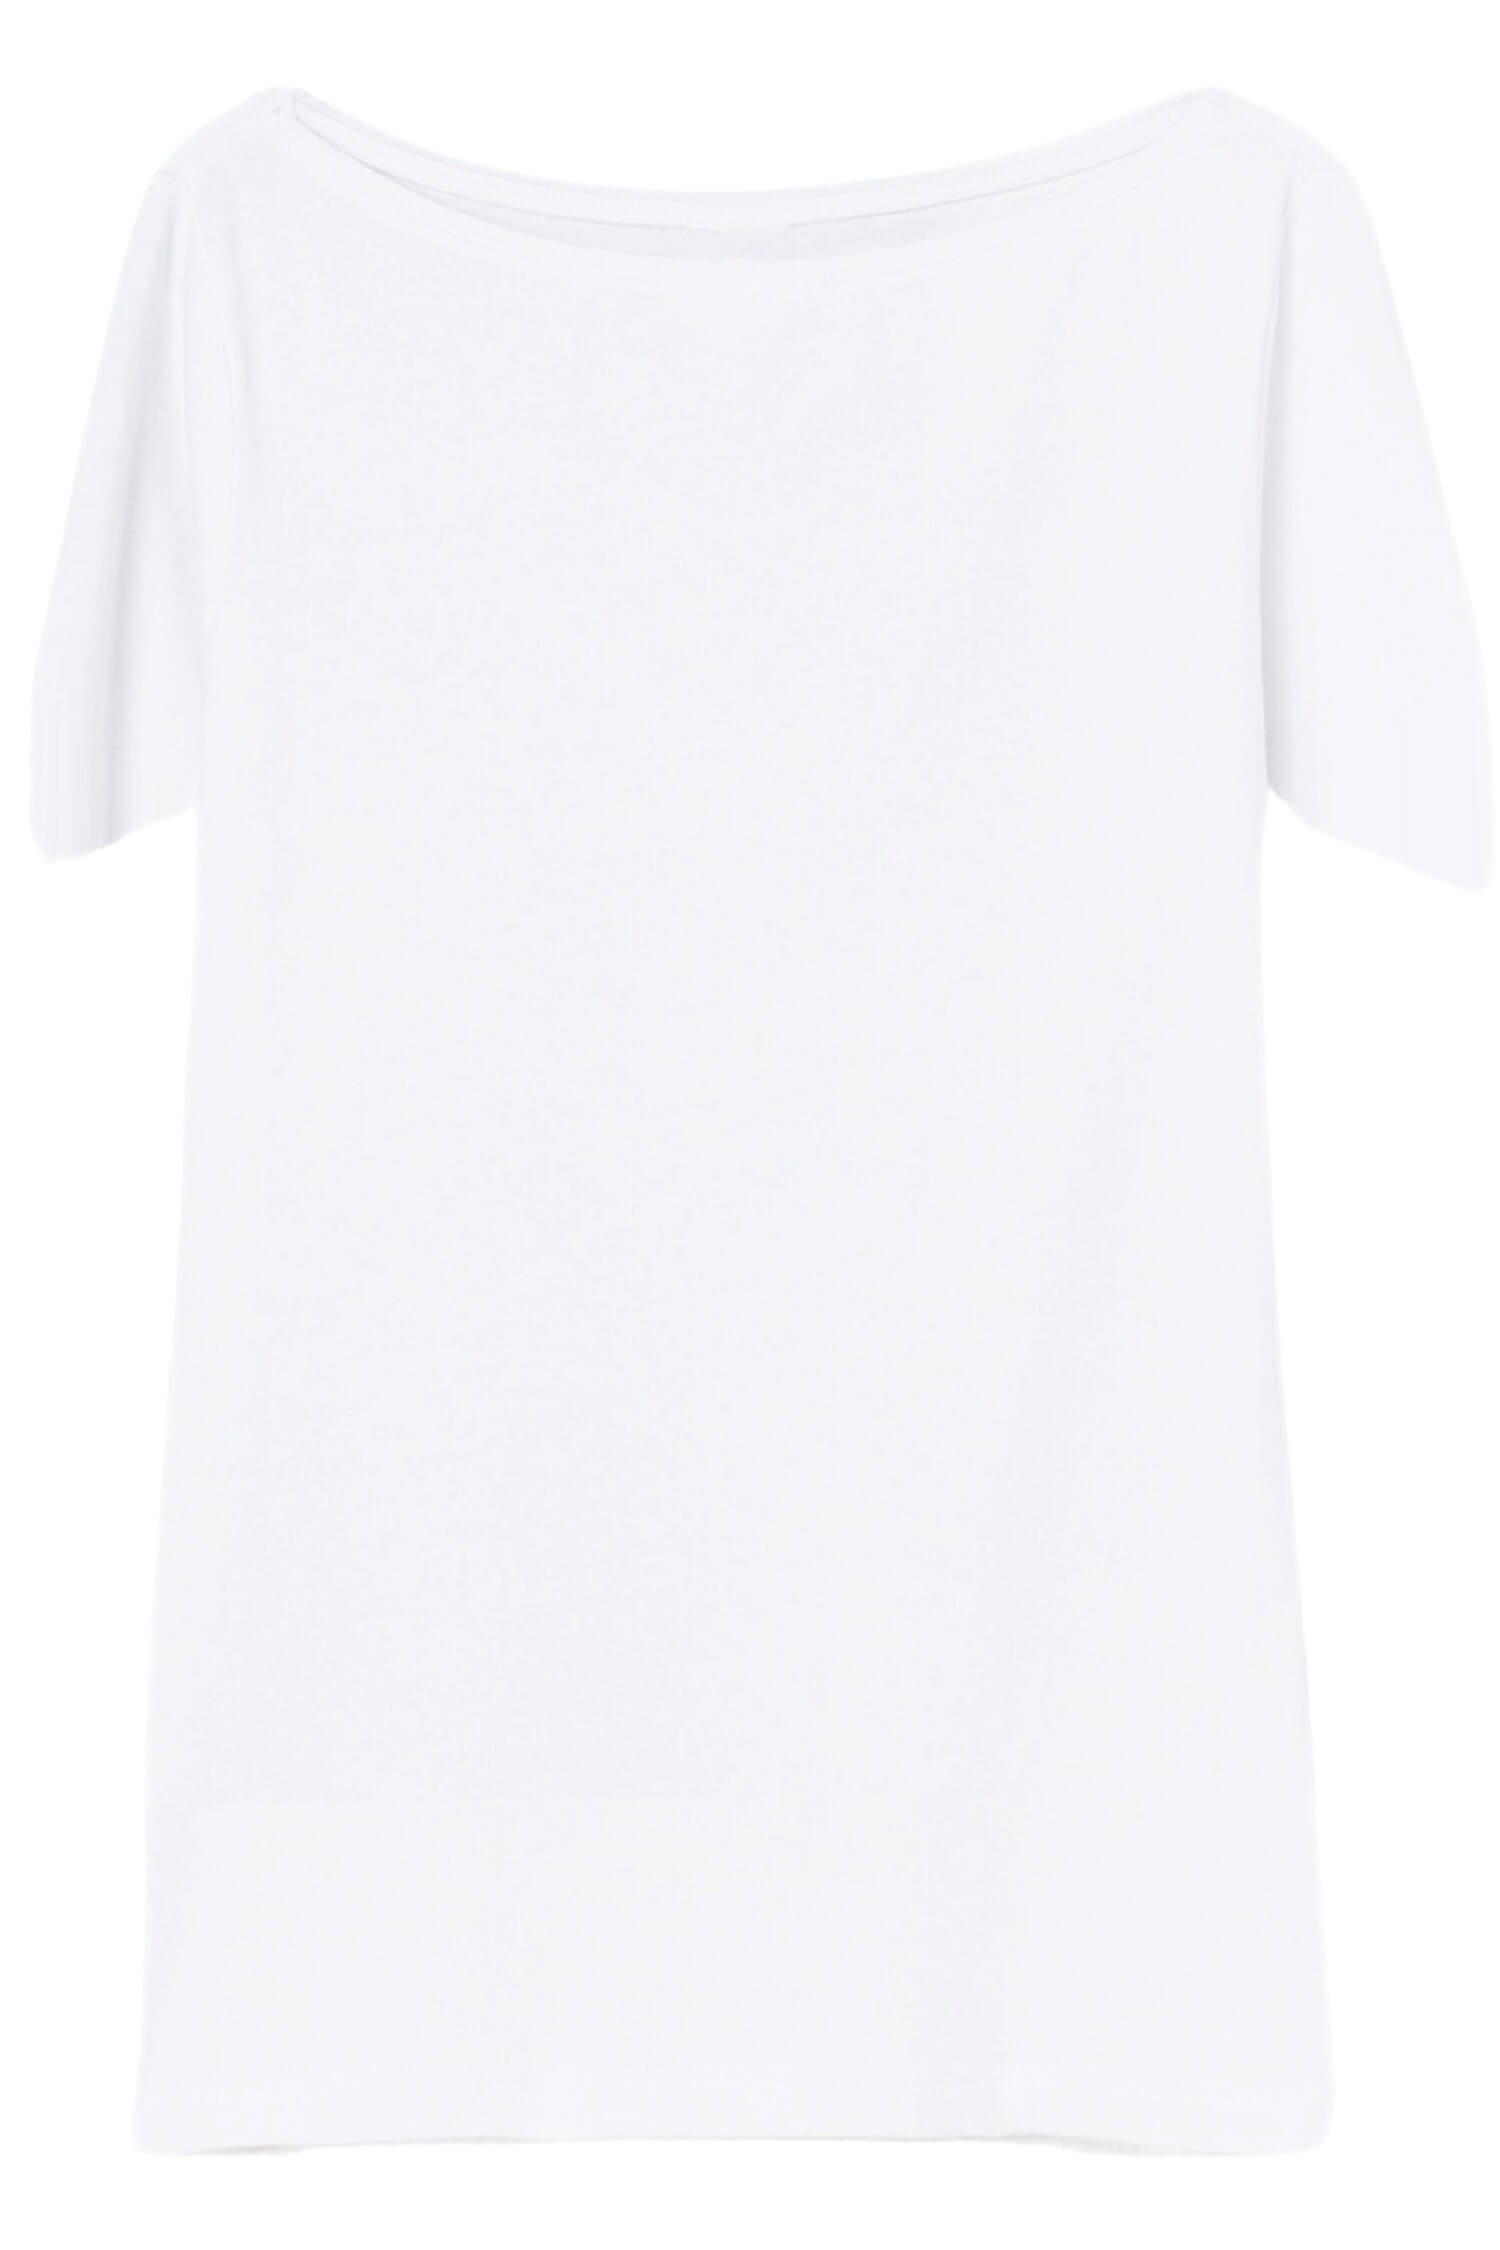 Danica dámské tričko s krátkým rukávem TSK-1005 XXL bílá